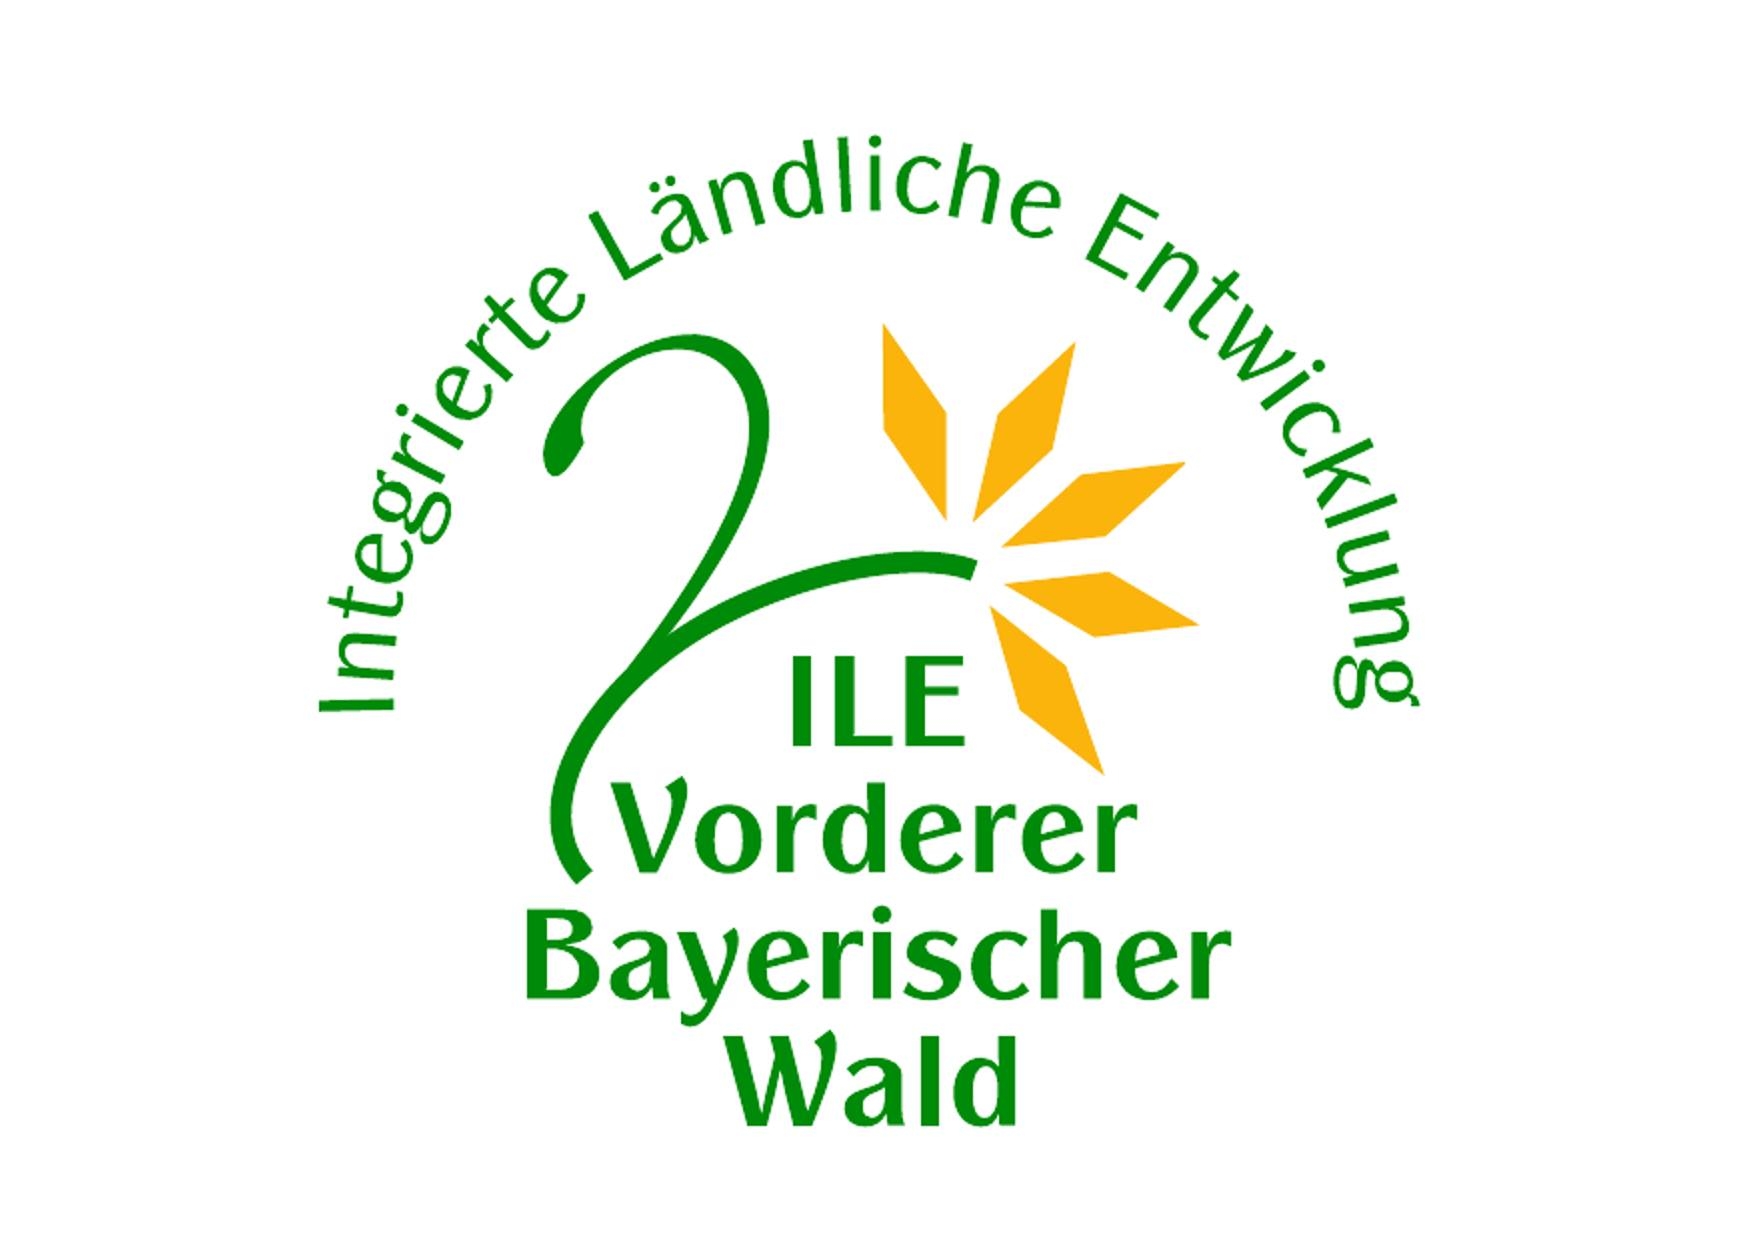 ILE-Vorderer Bayerischer Wald sucht Regionalmanager*in (m/w/d)